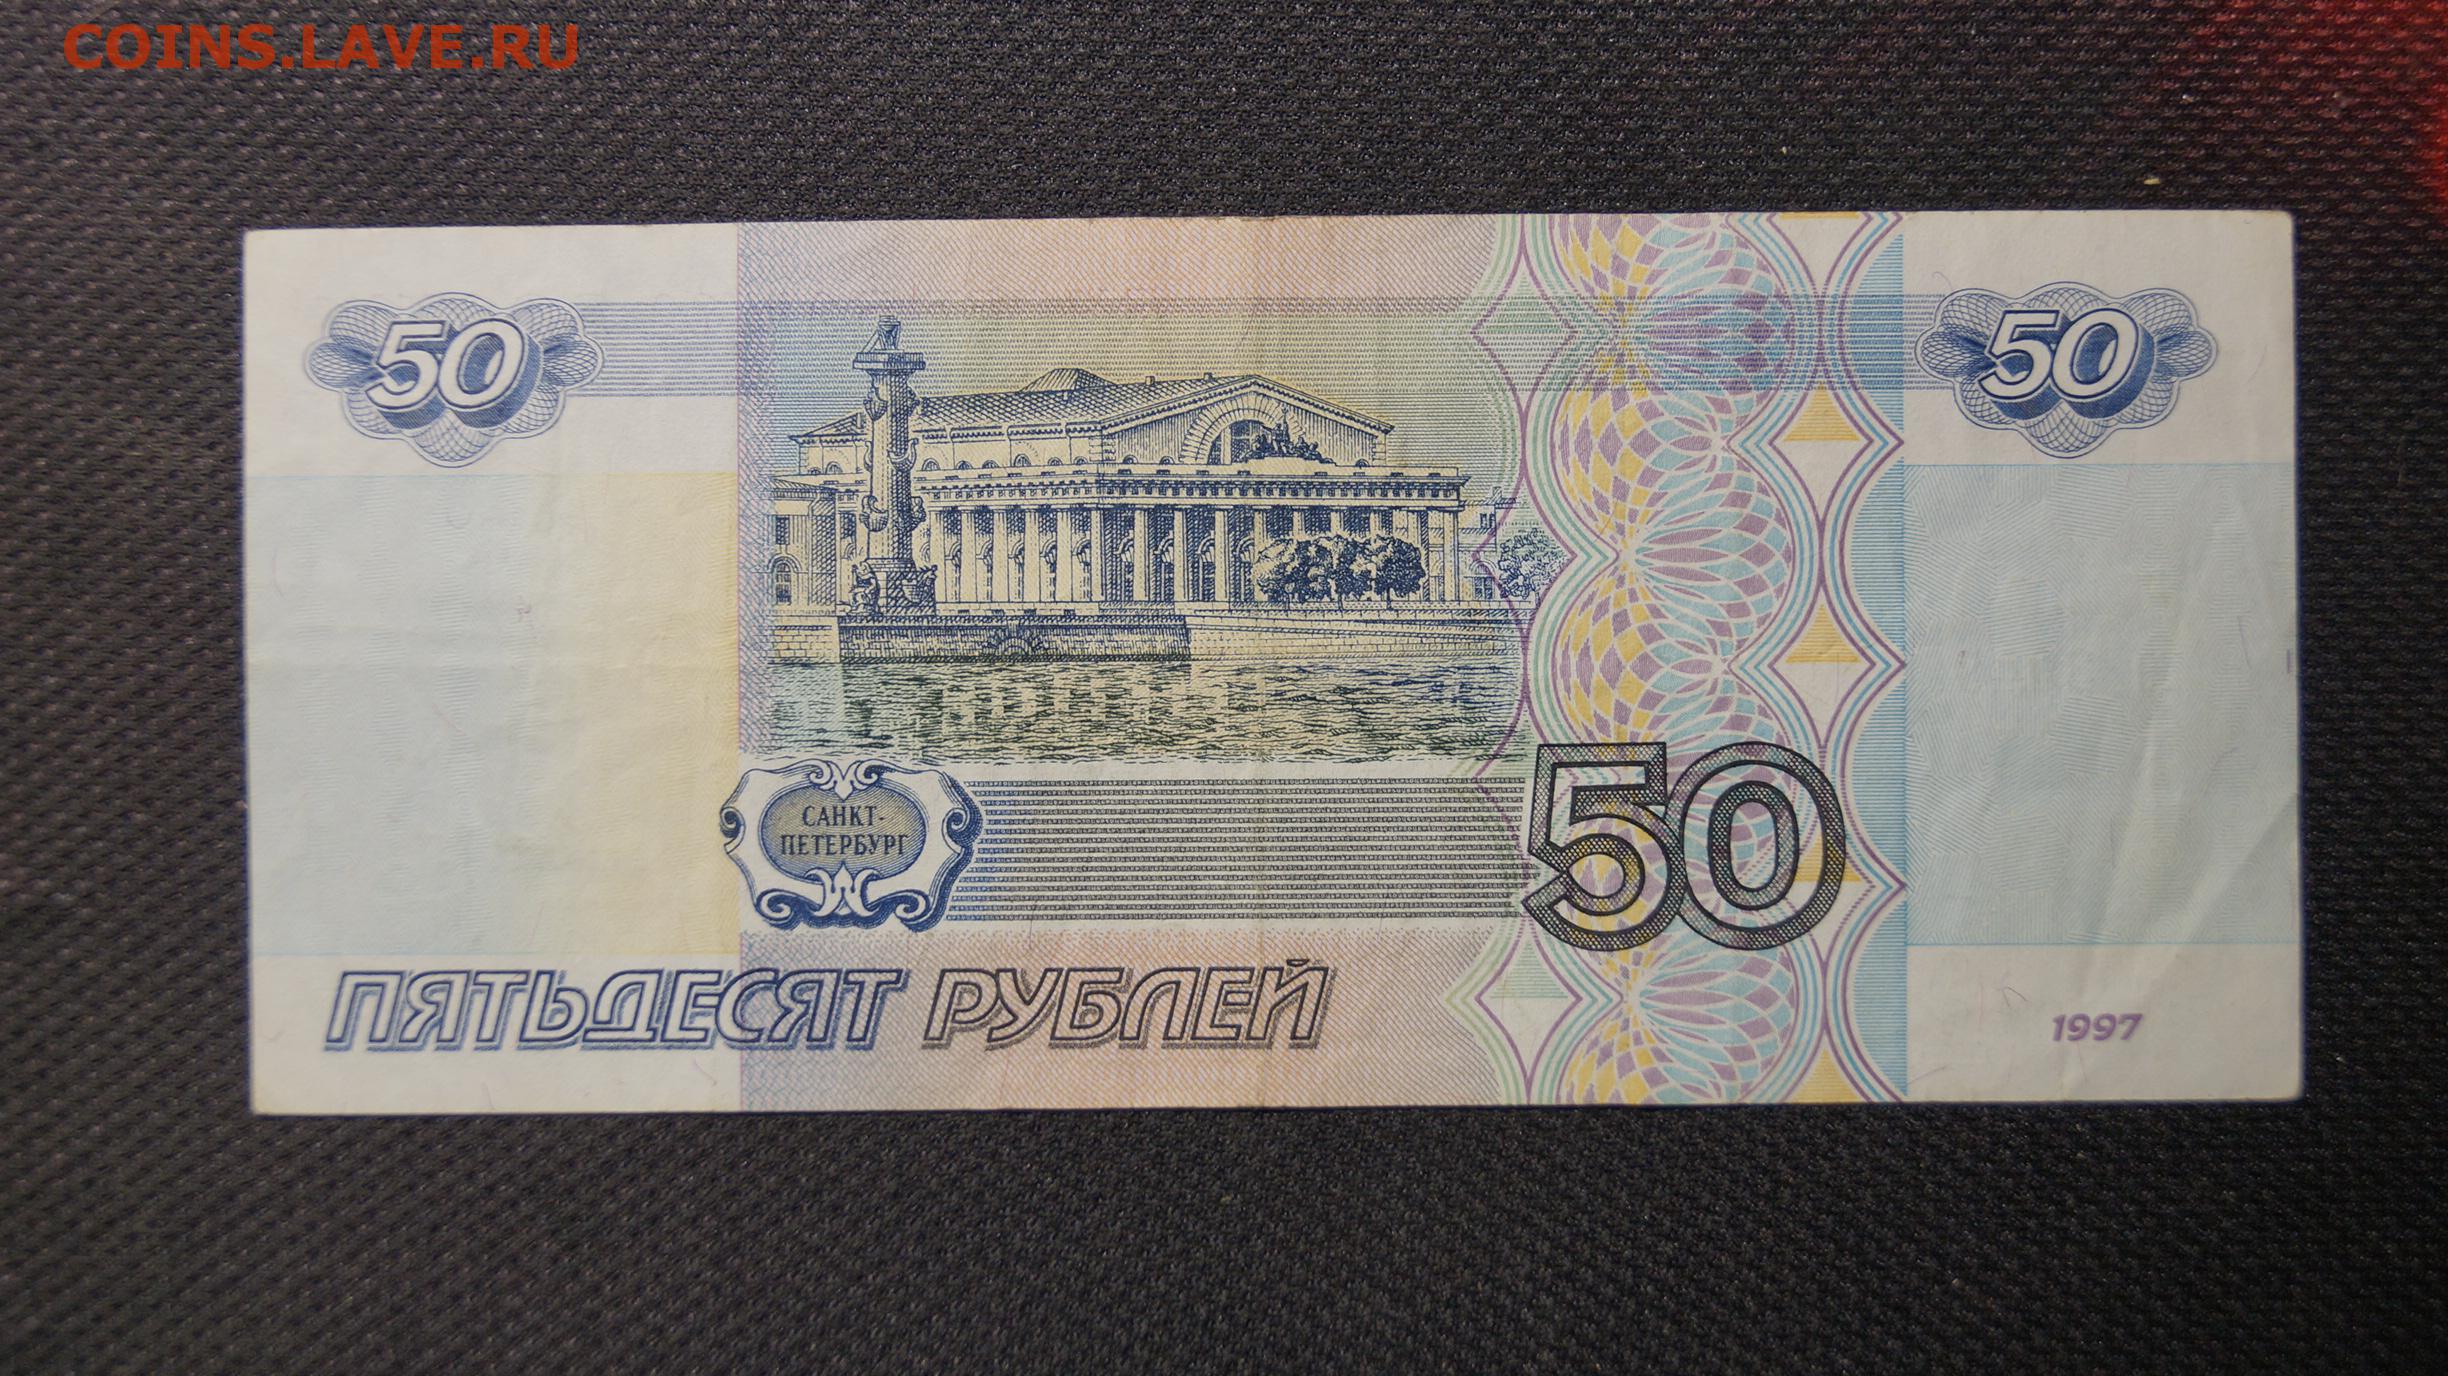 Пополнение от 50 рублей gpk1. 50 Рублей 1997г. 50 Рублей фото. Пятьдесят рублей фото. Купюра 50 руб передняя часть.